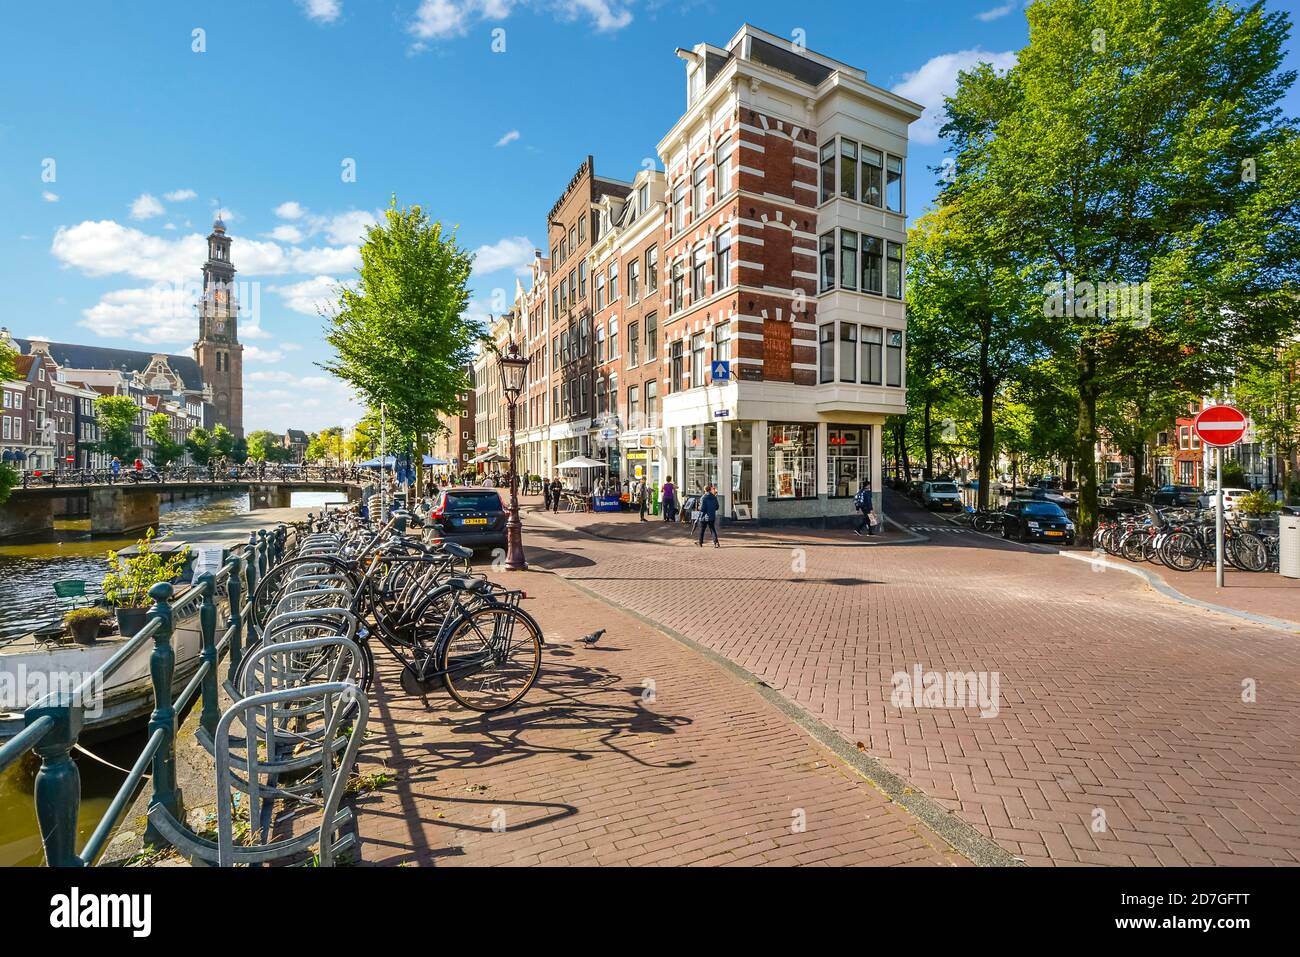 Biciclette parcheggiate lungo un canale vicino alla chiesa di Westerkerk AS i turisti potranno visitare i negozi e i ponti del centro storico Di Amsterdam Paesi Bassi Foto Stock